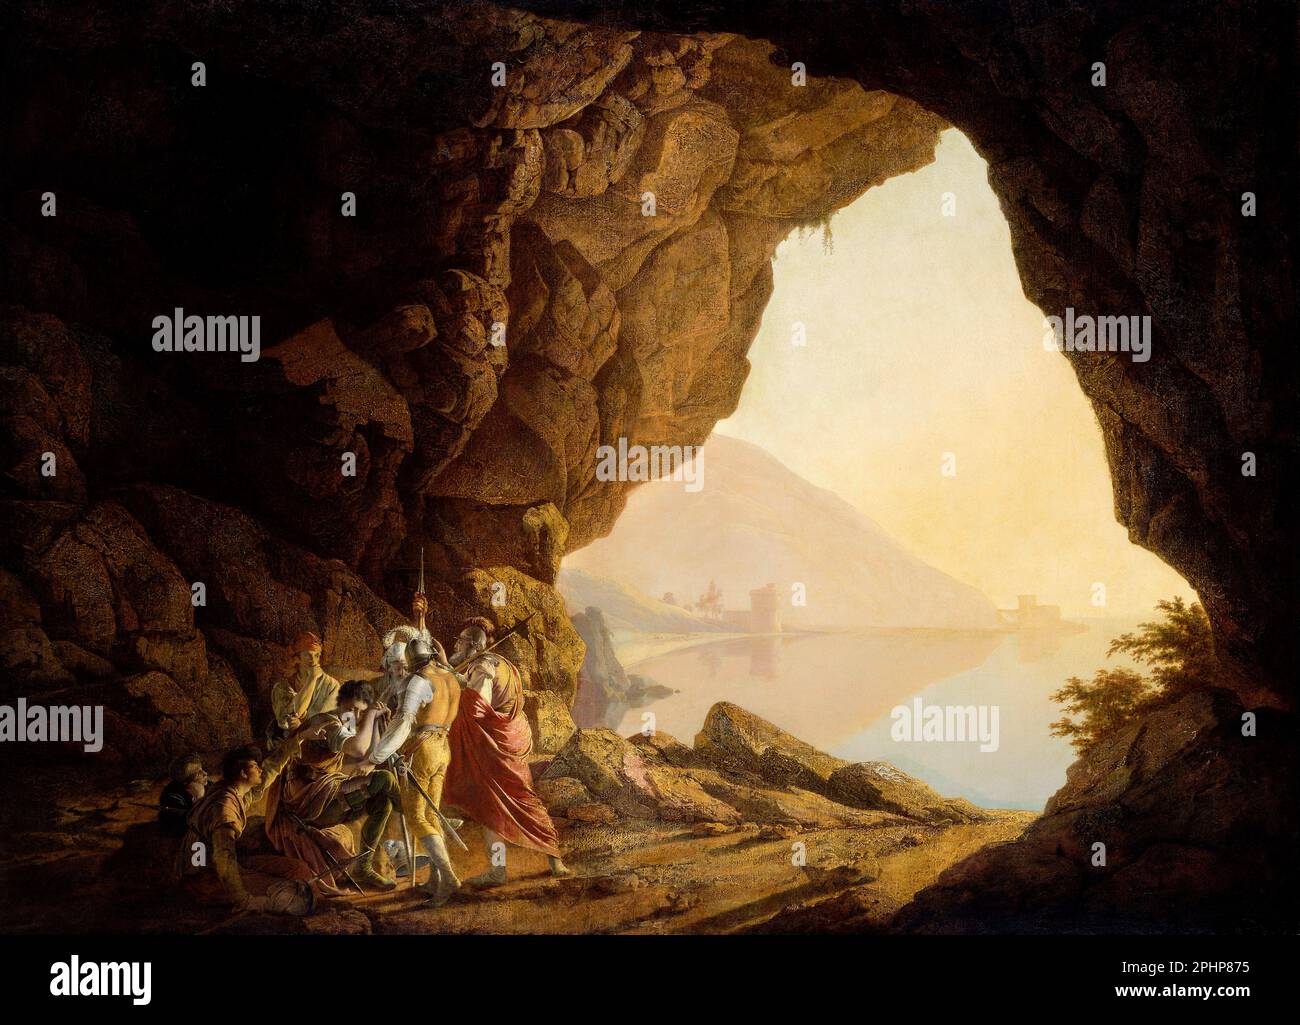 Grotte au bord de la mer dans le Royaume de Naples avec Banditti, coucher de soleil par la lumière du jour par Joseph Wright de Derby (1734-1797), huile sur toile, 1778 Banque D'Images